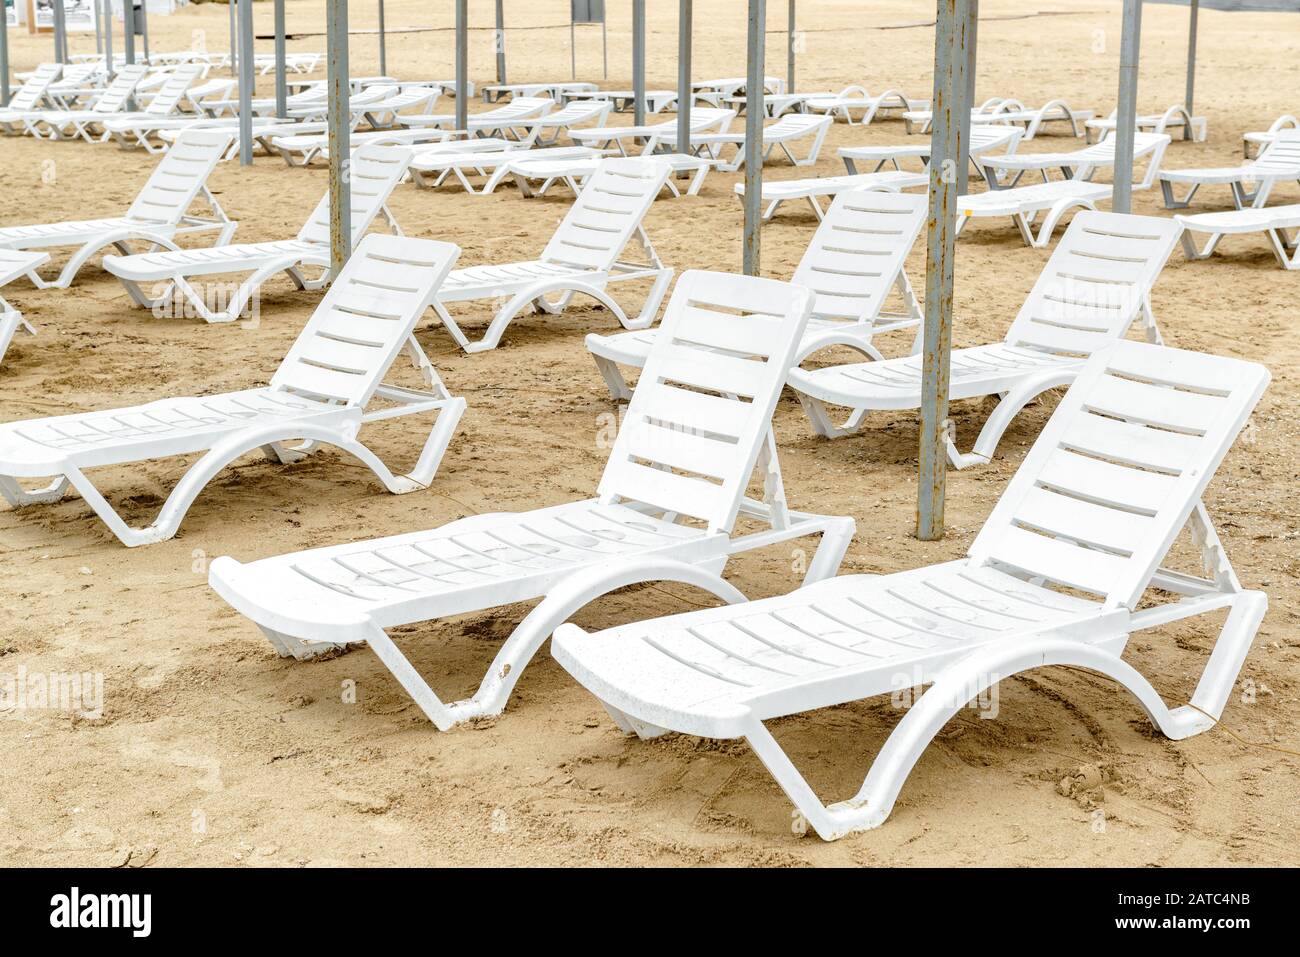 Chaises de plage en dehors de la saison. Beaucoup de transats vacants sur  une plage de sable. Panorama de nombreuses chaises longues en plastique  blanc sur la mer. Station balnéaire déserte bea